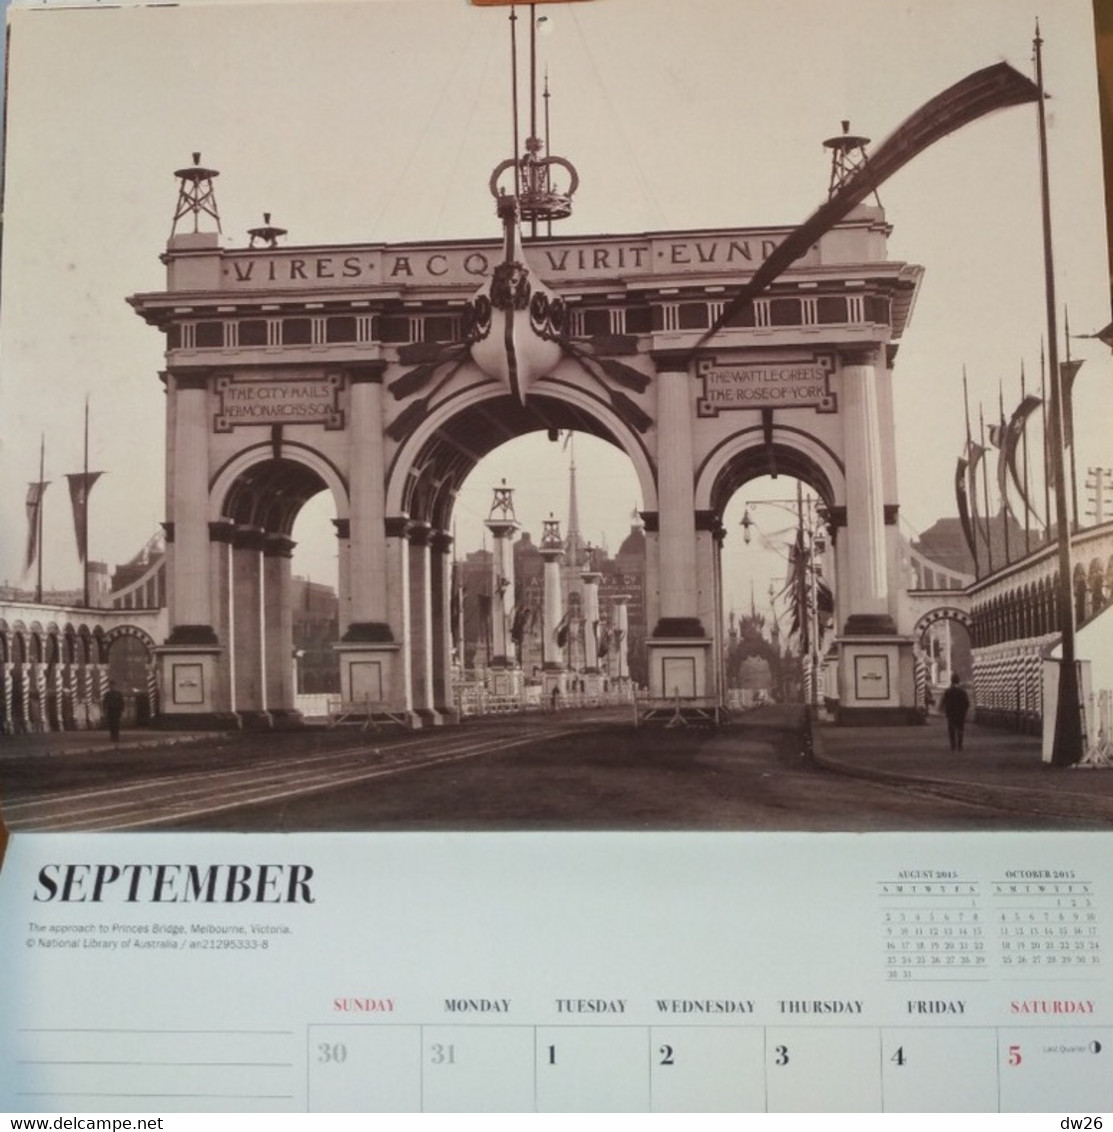 Calendrier 2015 - Vintage Melbourne avec vues anciennes, début XXe siècle - 25 x 32 cm - The Calensar Company